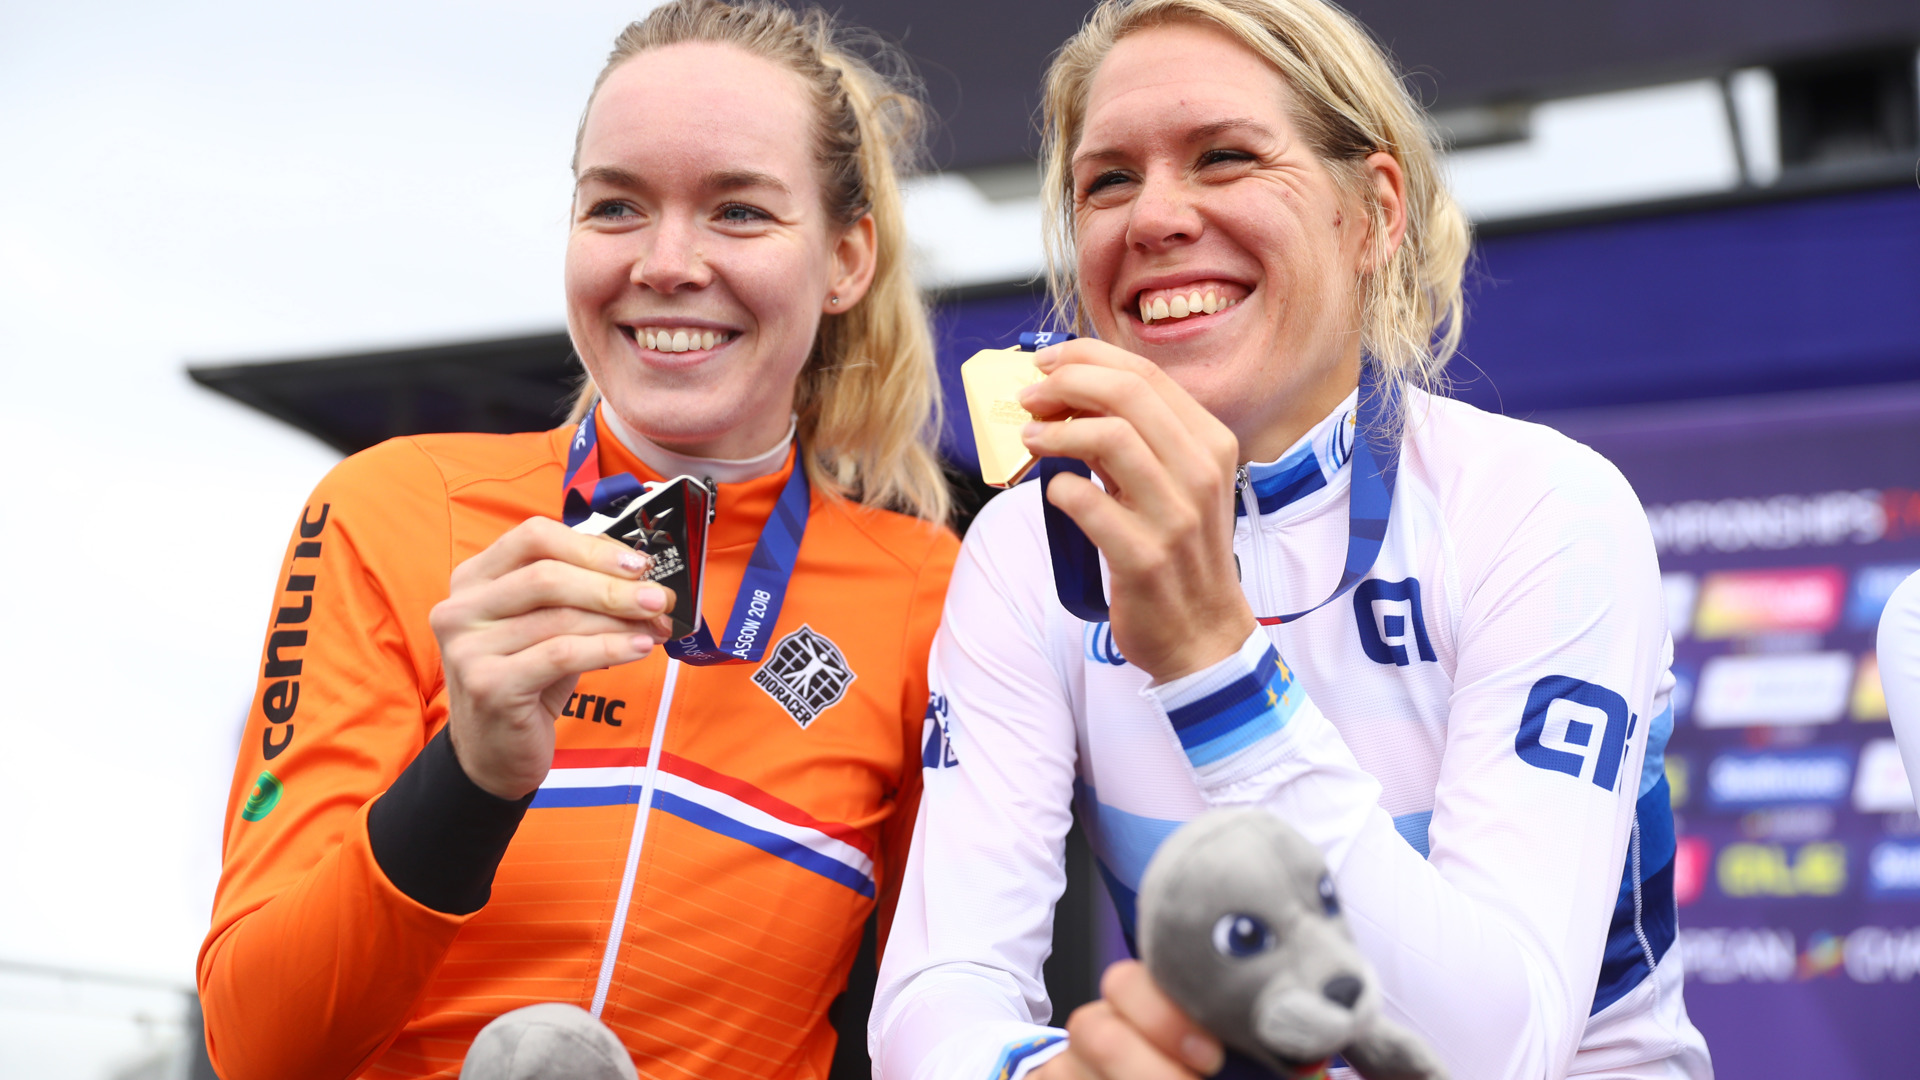 Anna van der Breggen zilver en Ellen van Dijk goud  tijdrit EK Glasgow 2018.jpg